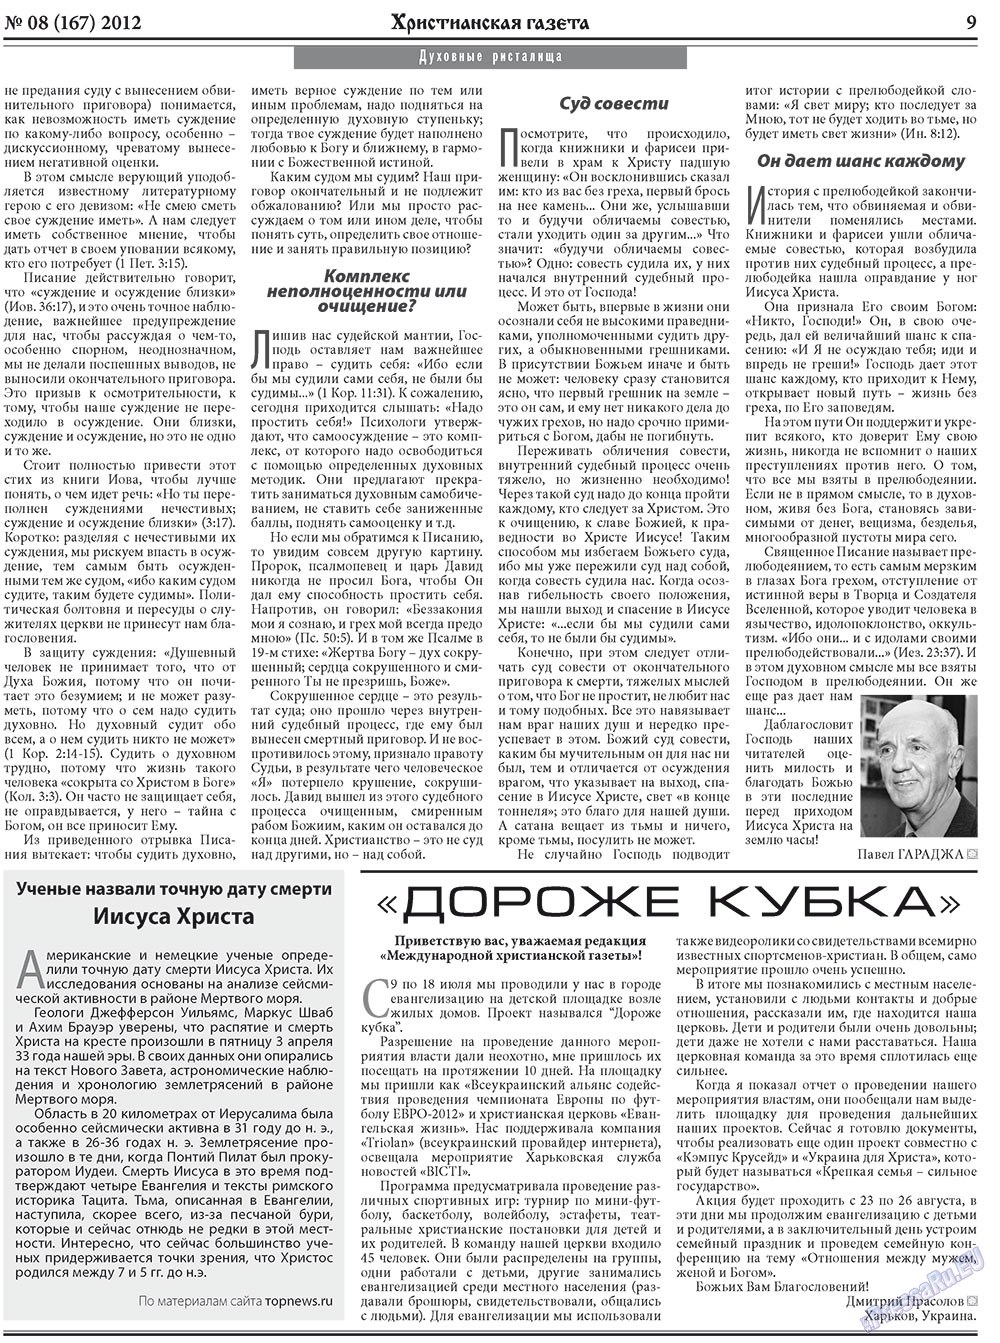 Hristianskaja gazeta (Zeitung). 2012 Jahr, Ausgabe 8, Seite 9